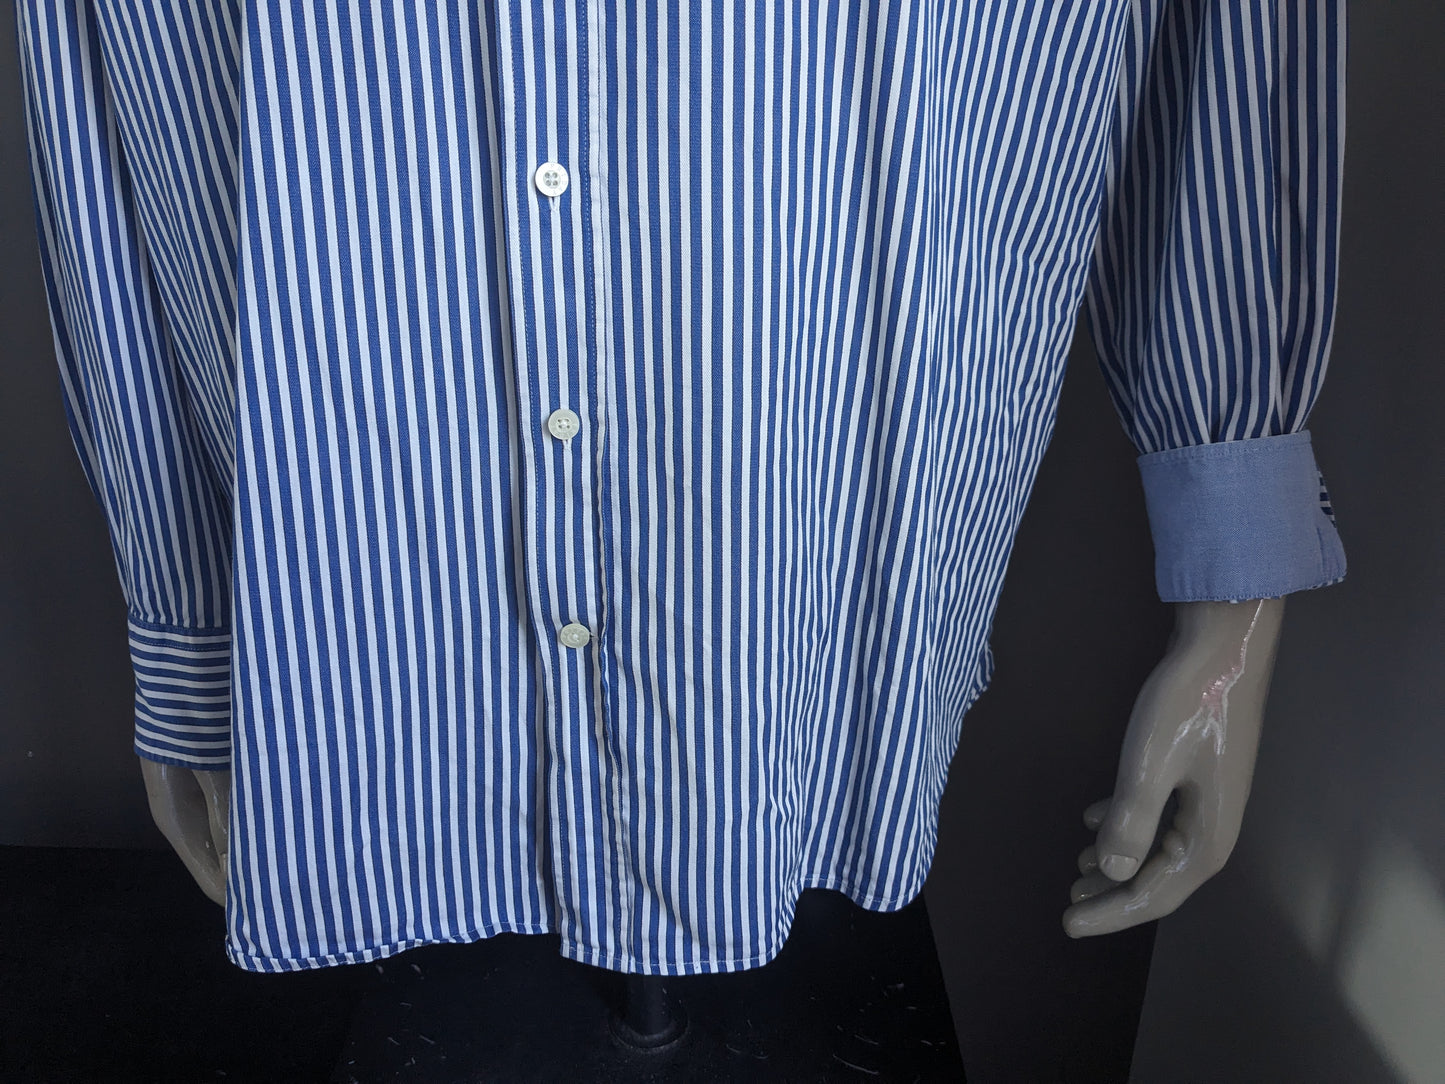 Adam Friday shirt. Blue white striped. Size 3XL / XXXL.